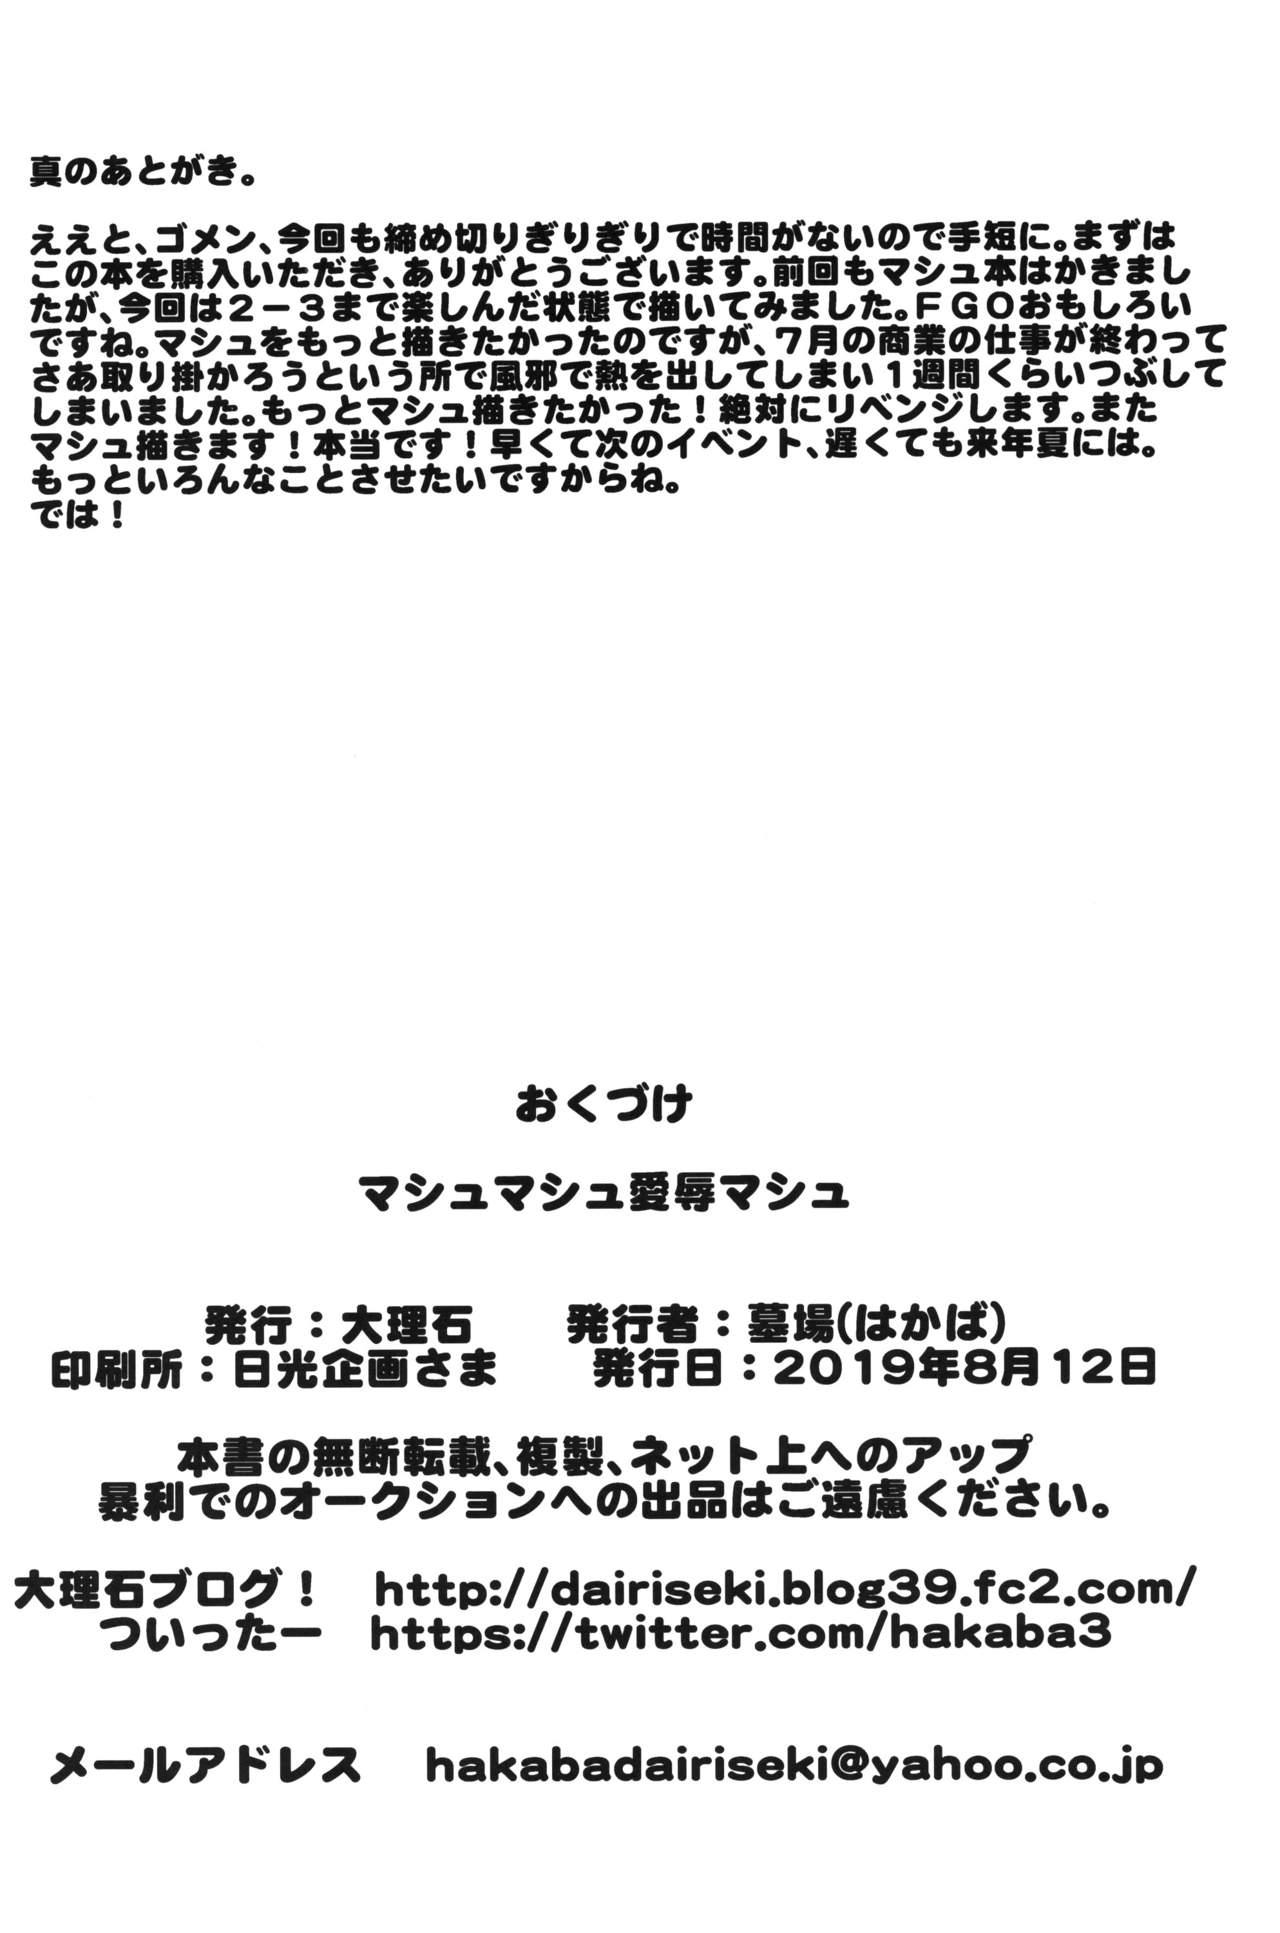 Bukkake Mash Mash Aijoku Mash - Fate grand order Amiga - Page 29